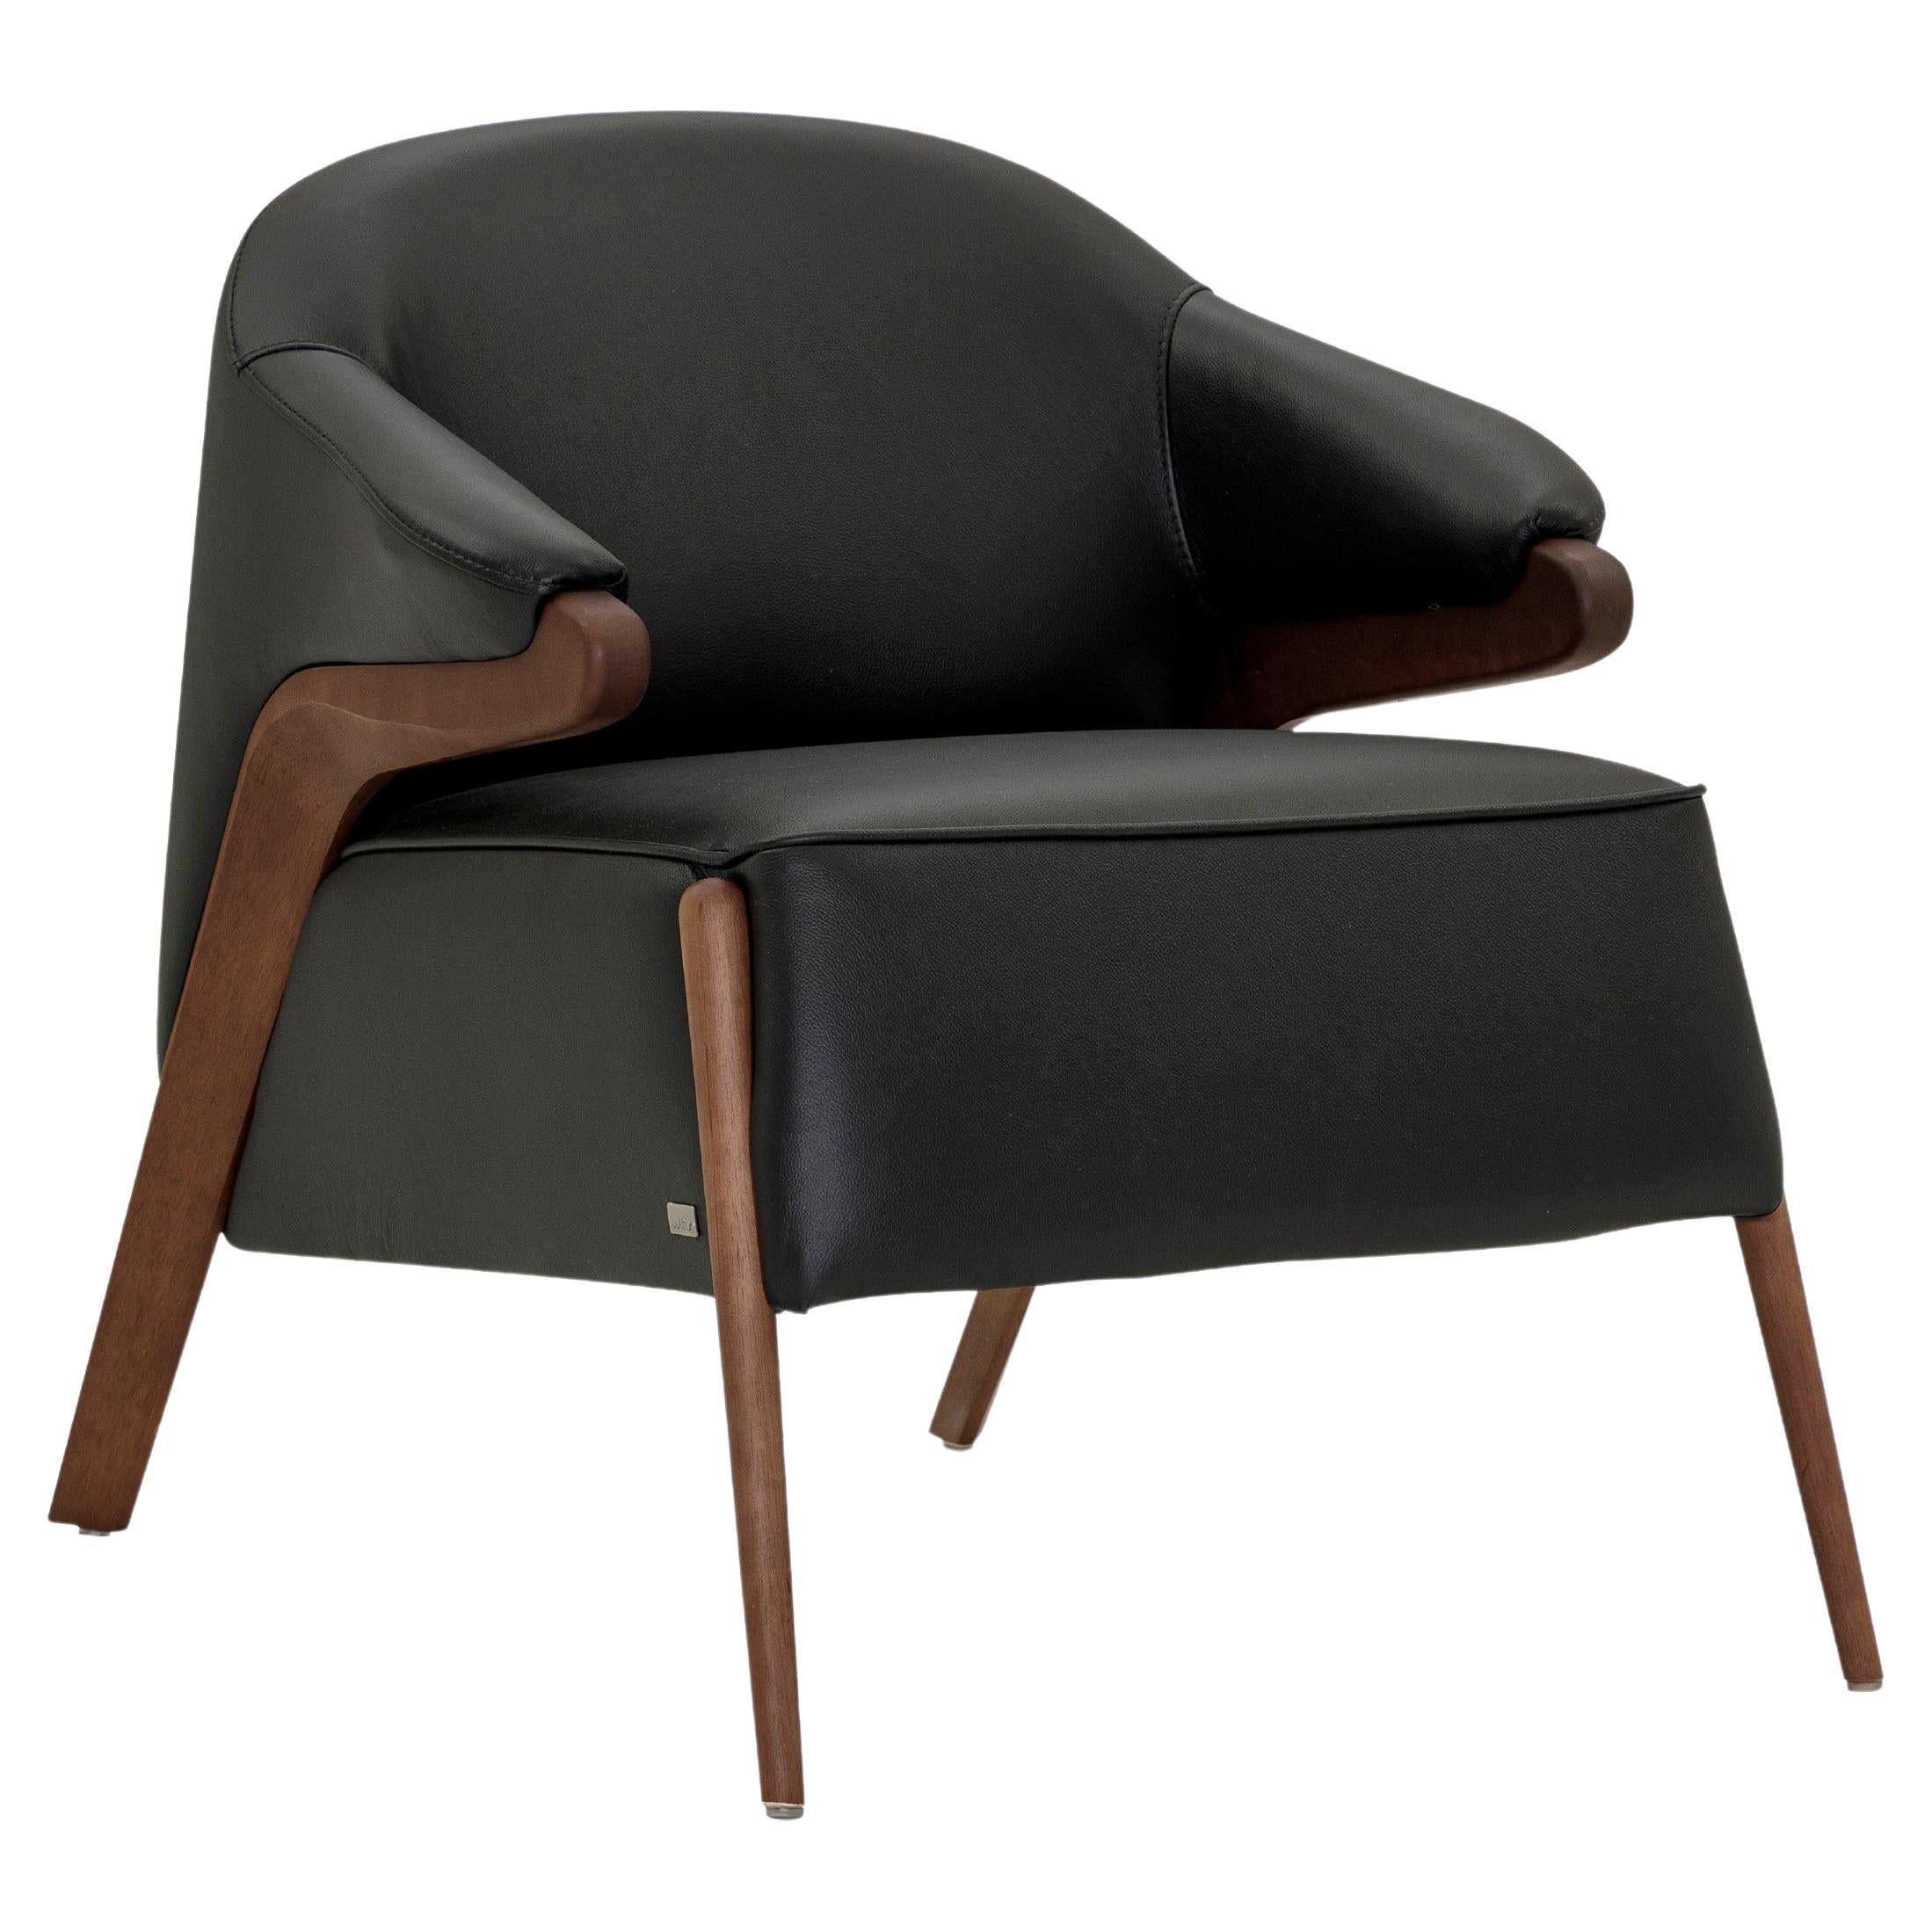 Osa gepolsterter Sessel mit geschwungener Rückenlehne aus Nussbaumholz-Finish und schwarzem Leder